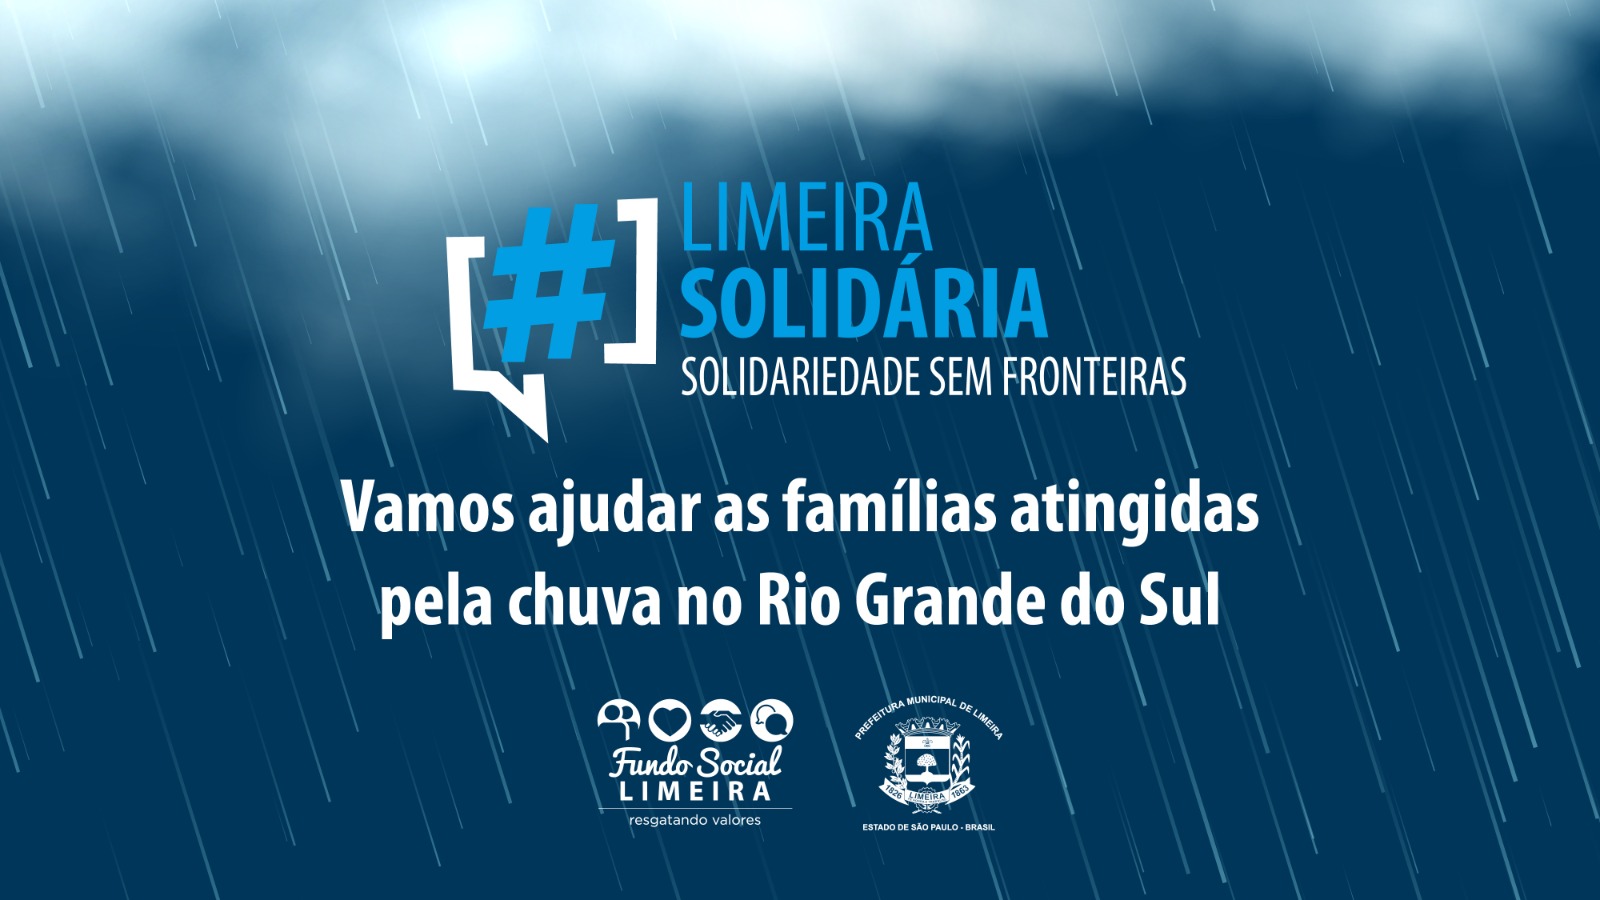 Fundo Social faz campanha para famílias atingidas por chuva no Rio Grande do Sul